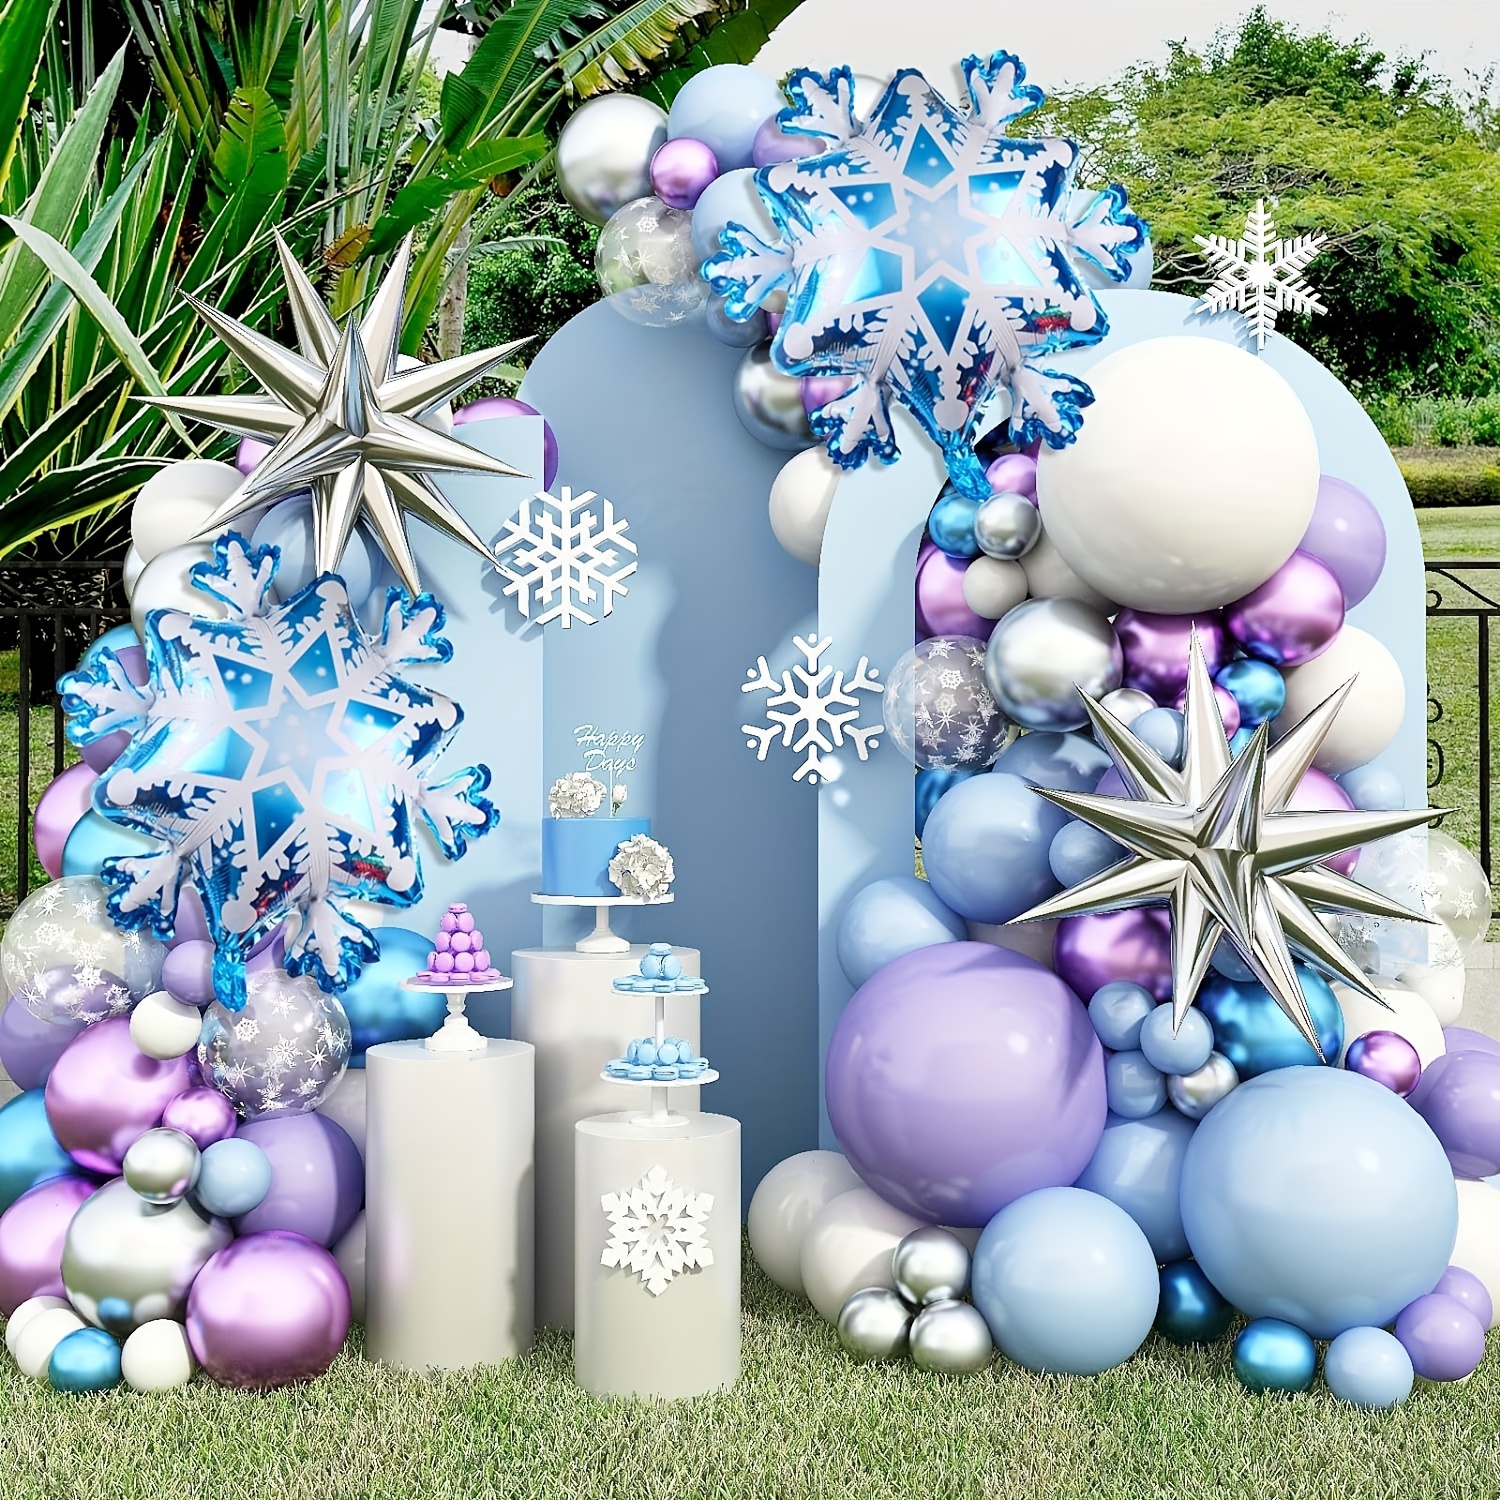 Decoraciones de fiesta de cumpleaños de Frozen, decoraciones de fiesta de  Frozen, incluye arco de globos de copo de nieve, telón de fondo del país de